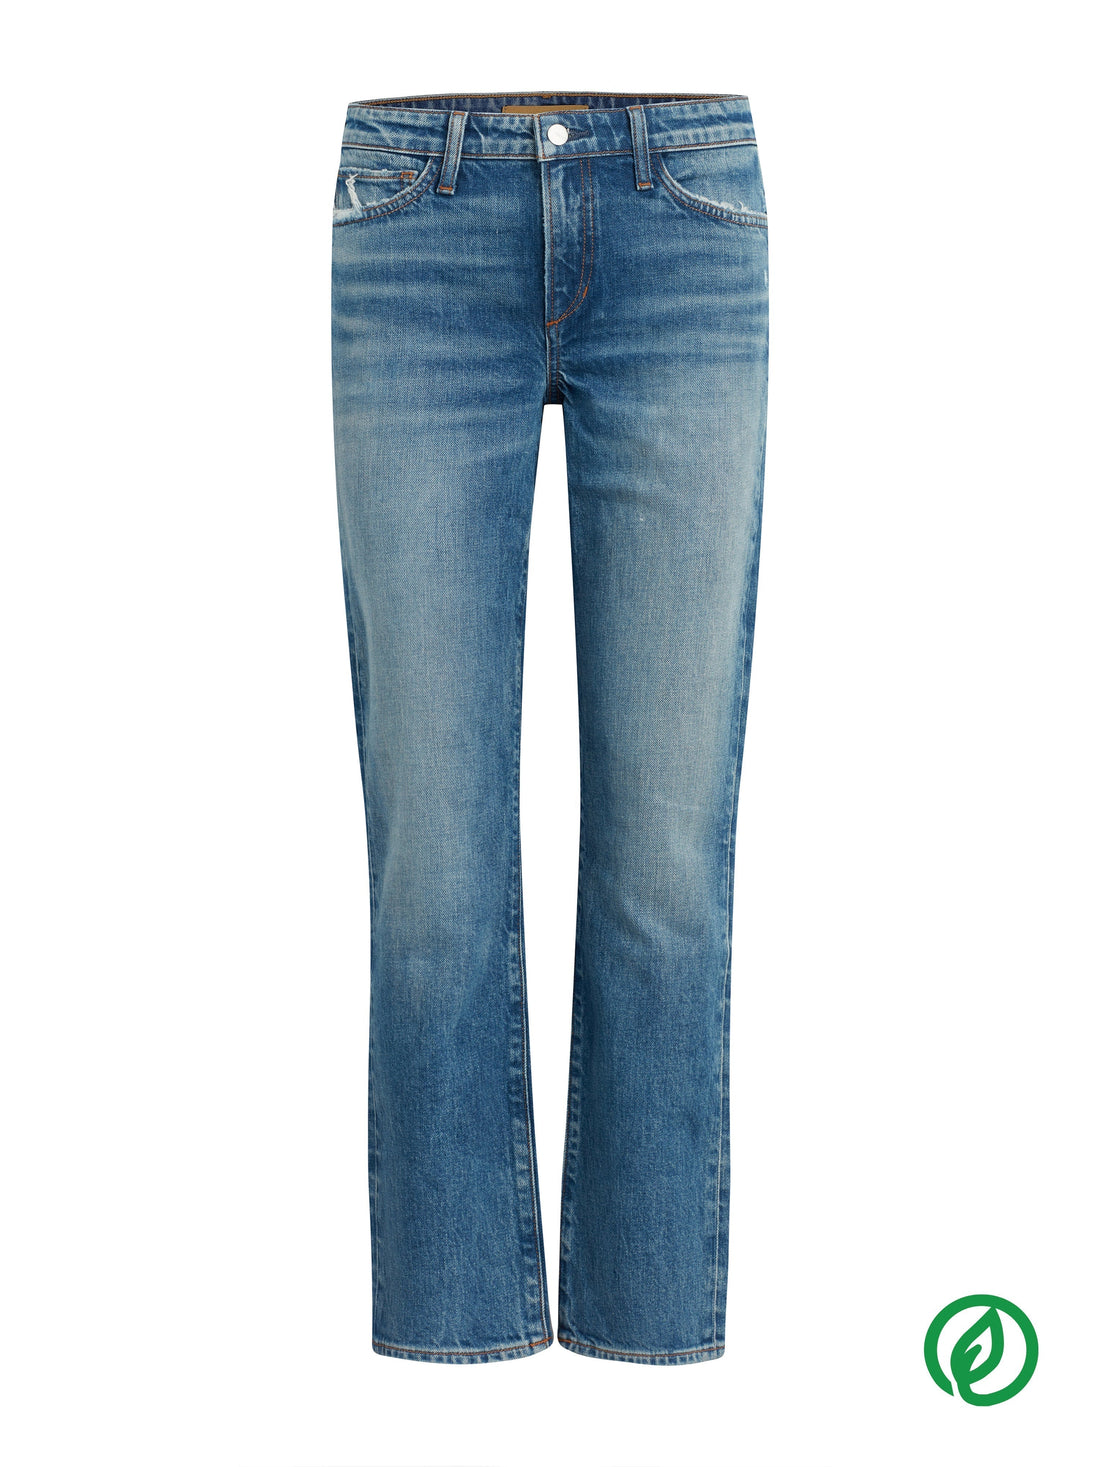 Lara Mid Rise Skinny Jeans - Premium Denim Denim from Joe's - Just $138.60! Shop now at shopthedenimbar